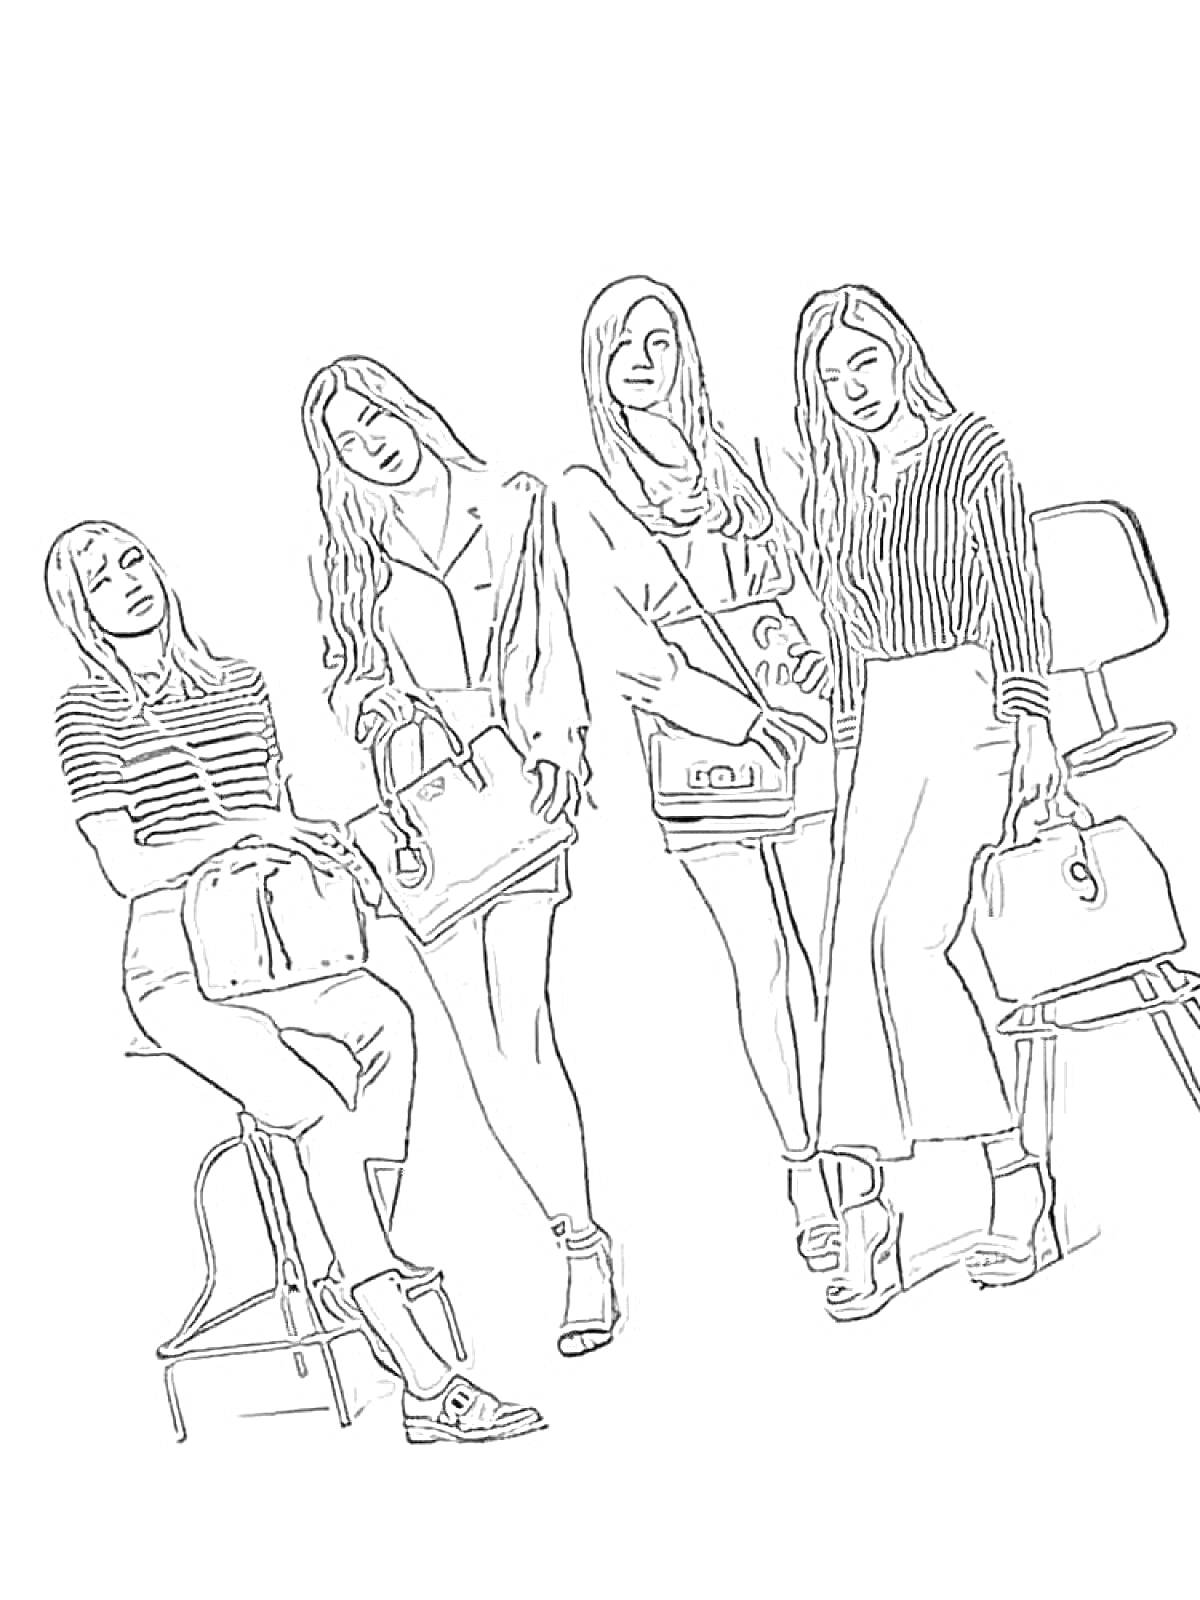 Раскраска Четыре девушки с сумками на фоне стульев